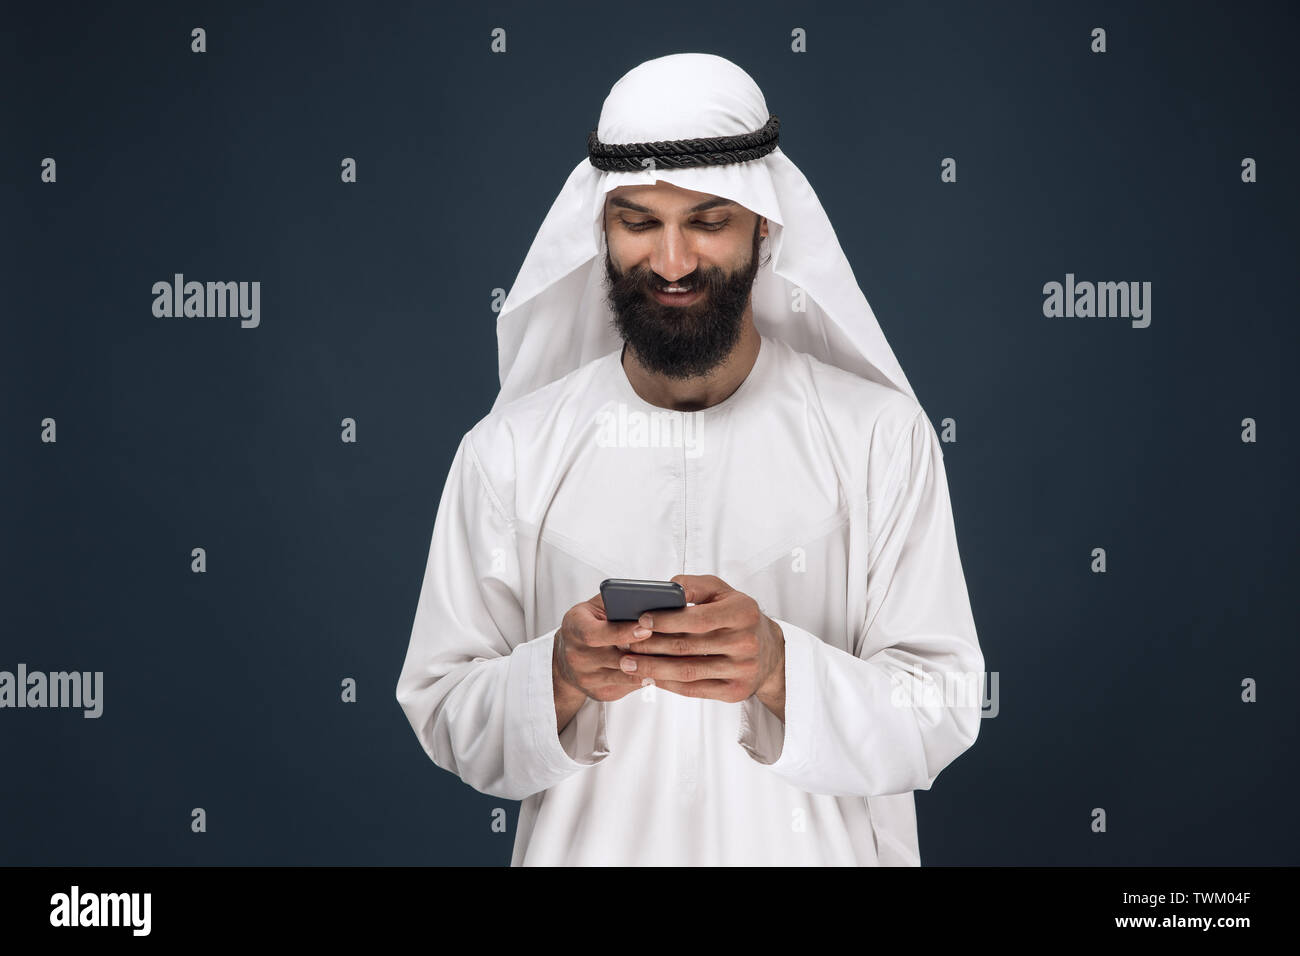 Телефон арабов. Араб в шоке. Араб на синем фоне. Saudi man Photography.